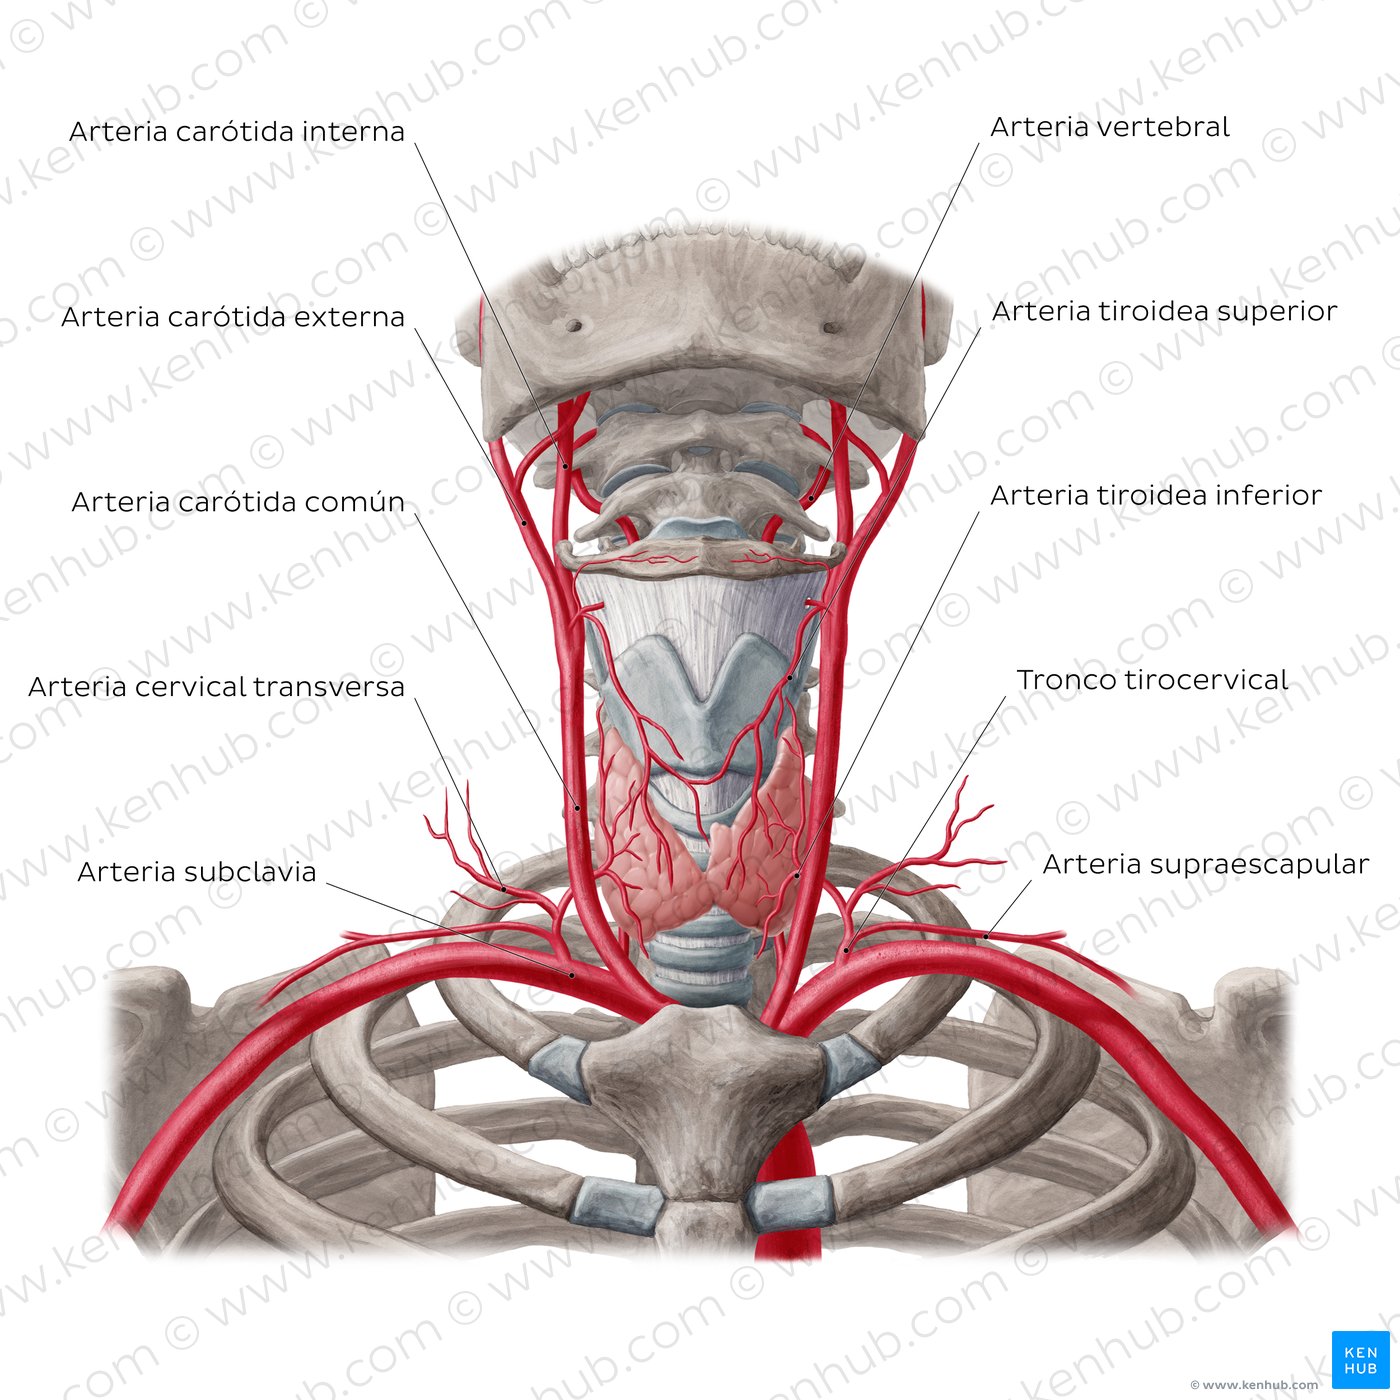 Arterias de la glándula tiroides